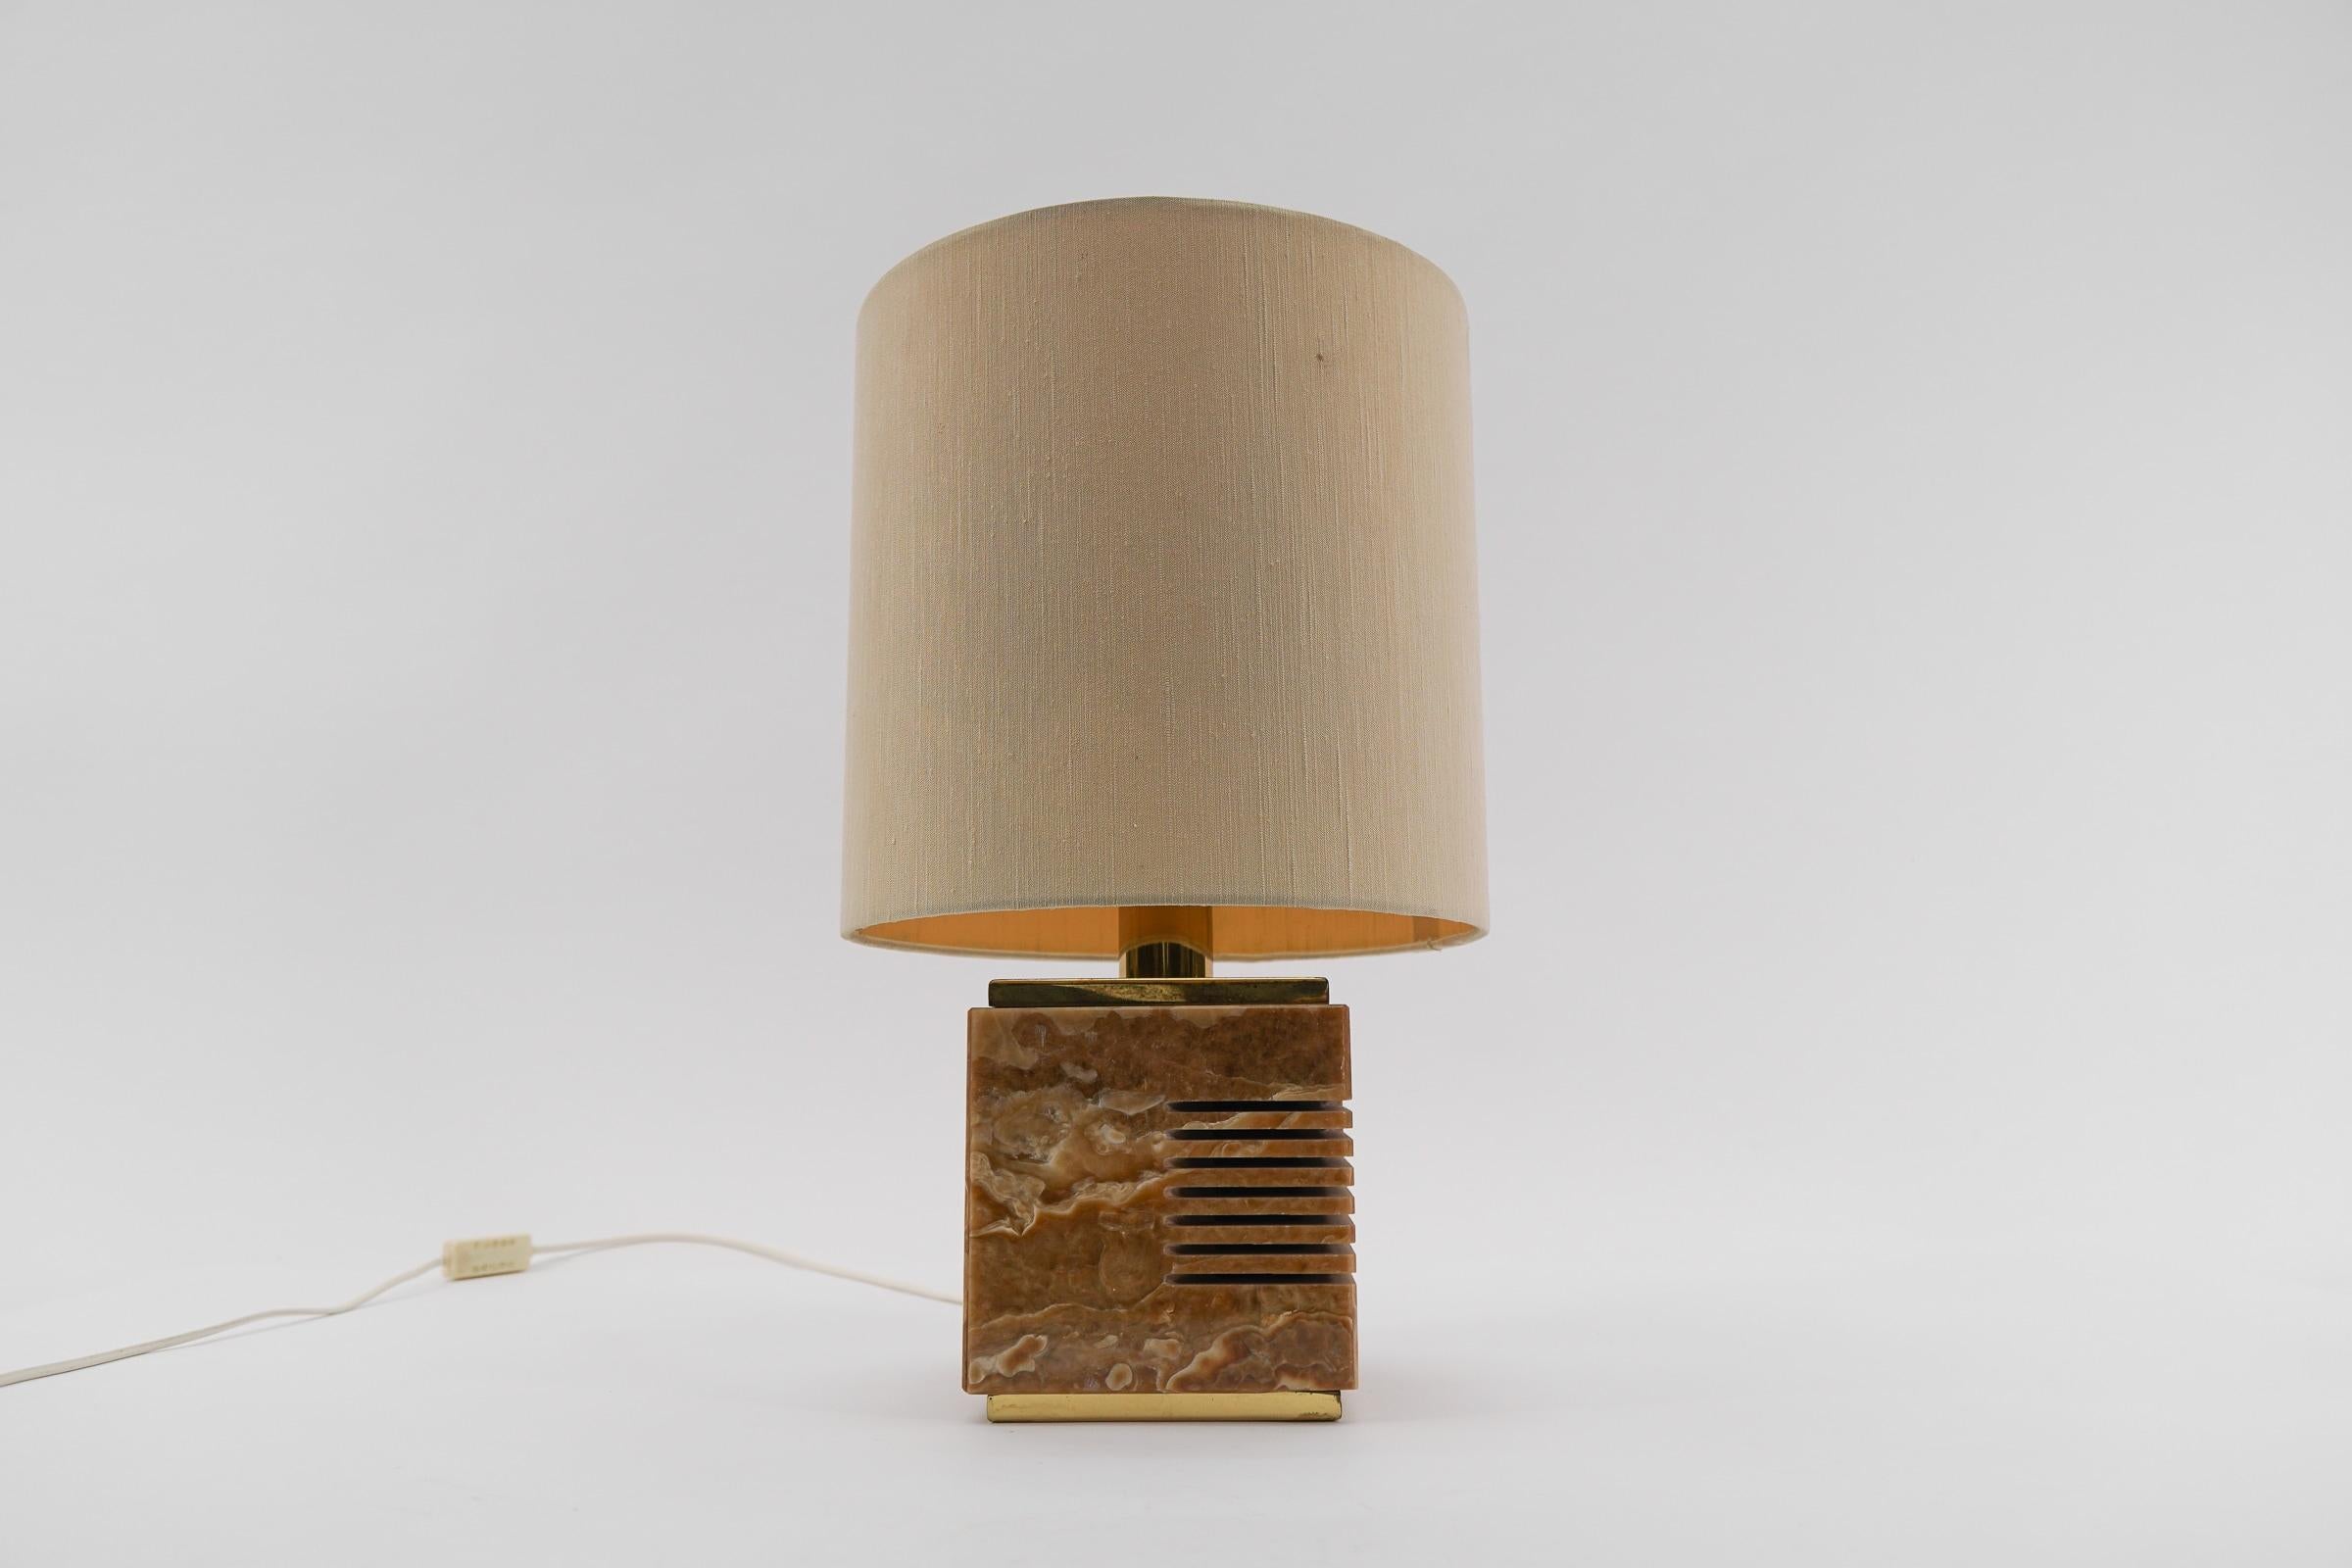 Exécuté en marbre, laiton et tissu. La lampe nécessite 1 ampoule à vis E27 / E26 Edison, est câblée, en état de marche et fonctionne sur 110 / 230 volts.

Nos lampes sont vérifiées, nettoyées et conviennent à une utilisation aux États-Unis. Pour une